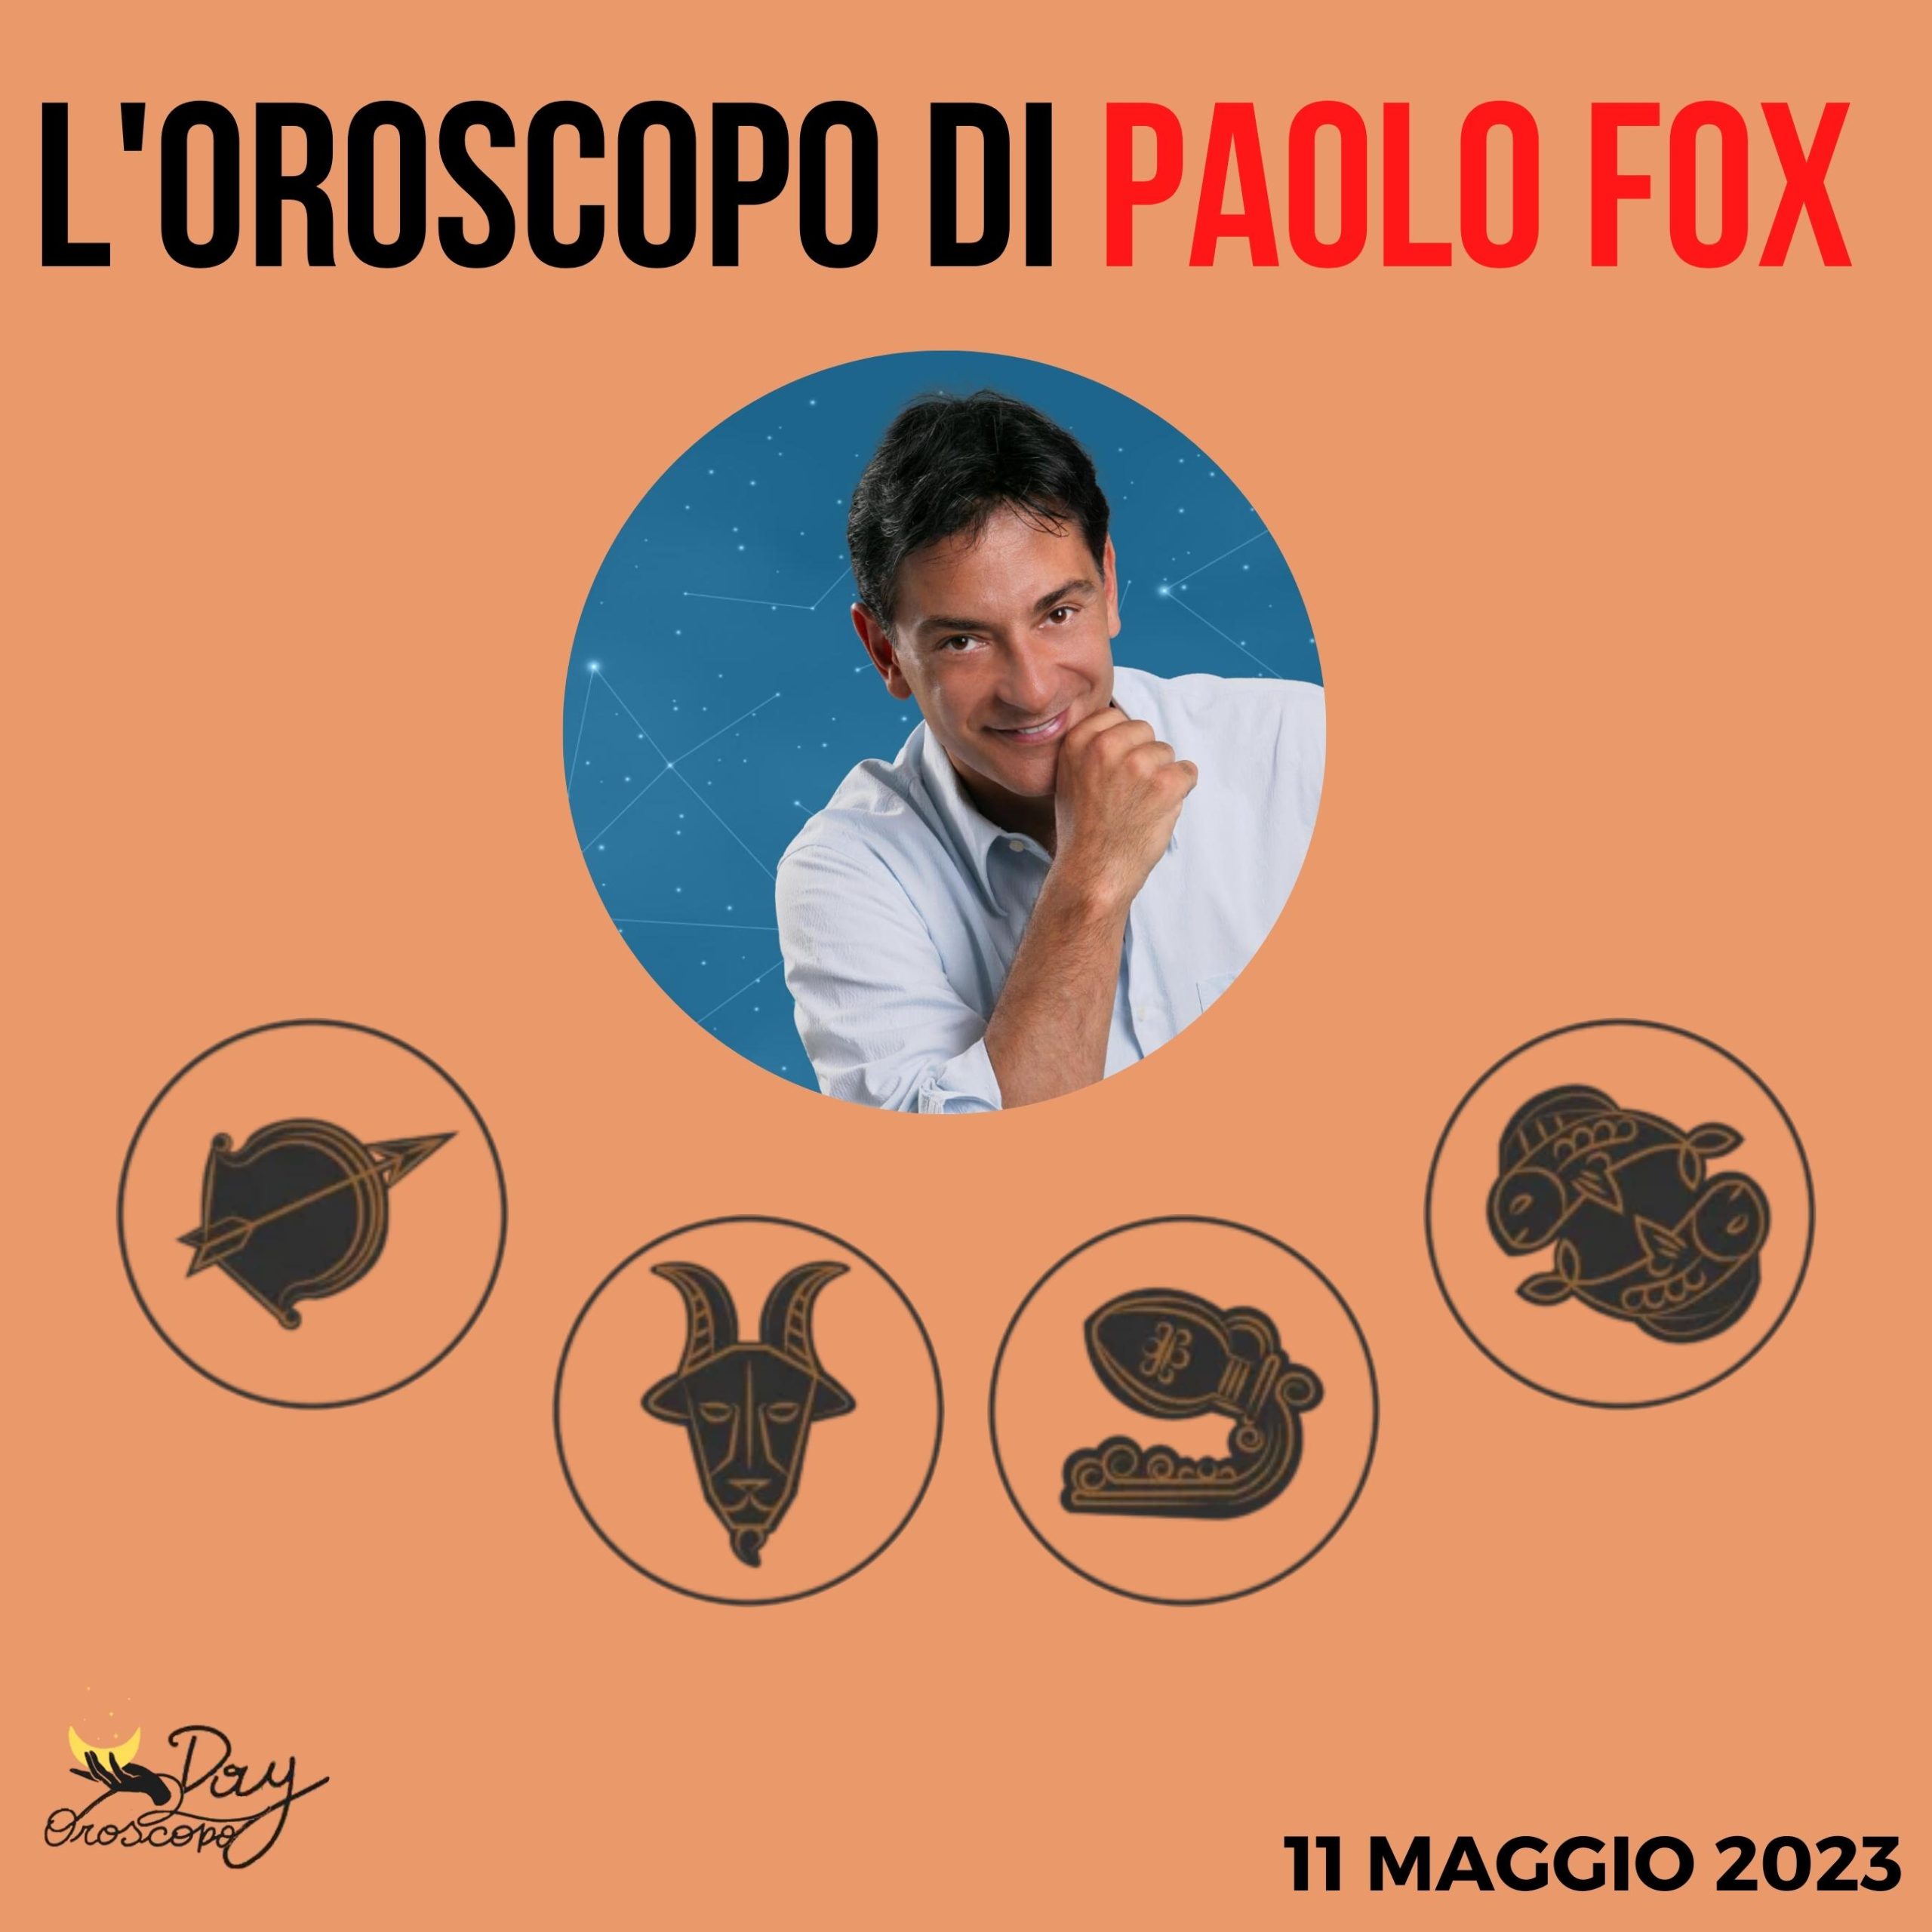 Oroscopo oggi domani Paolo Fox 11 maggio Sagittario Capricorno Acquario Pesci